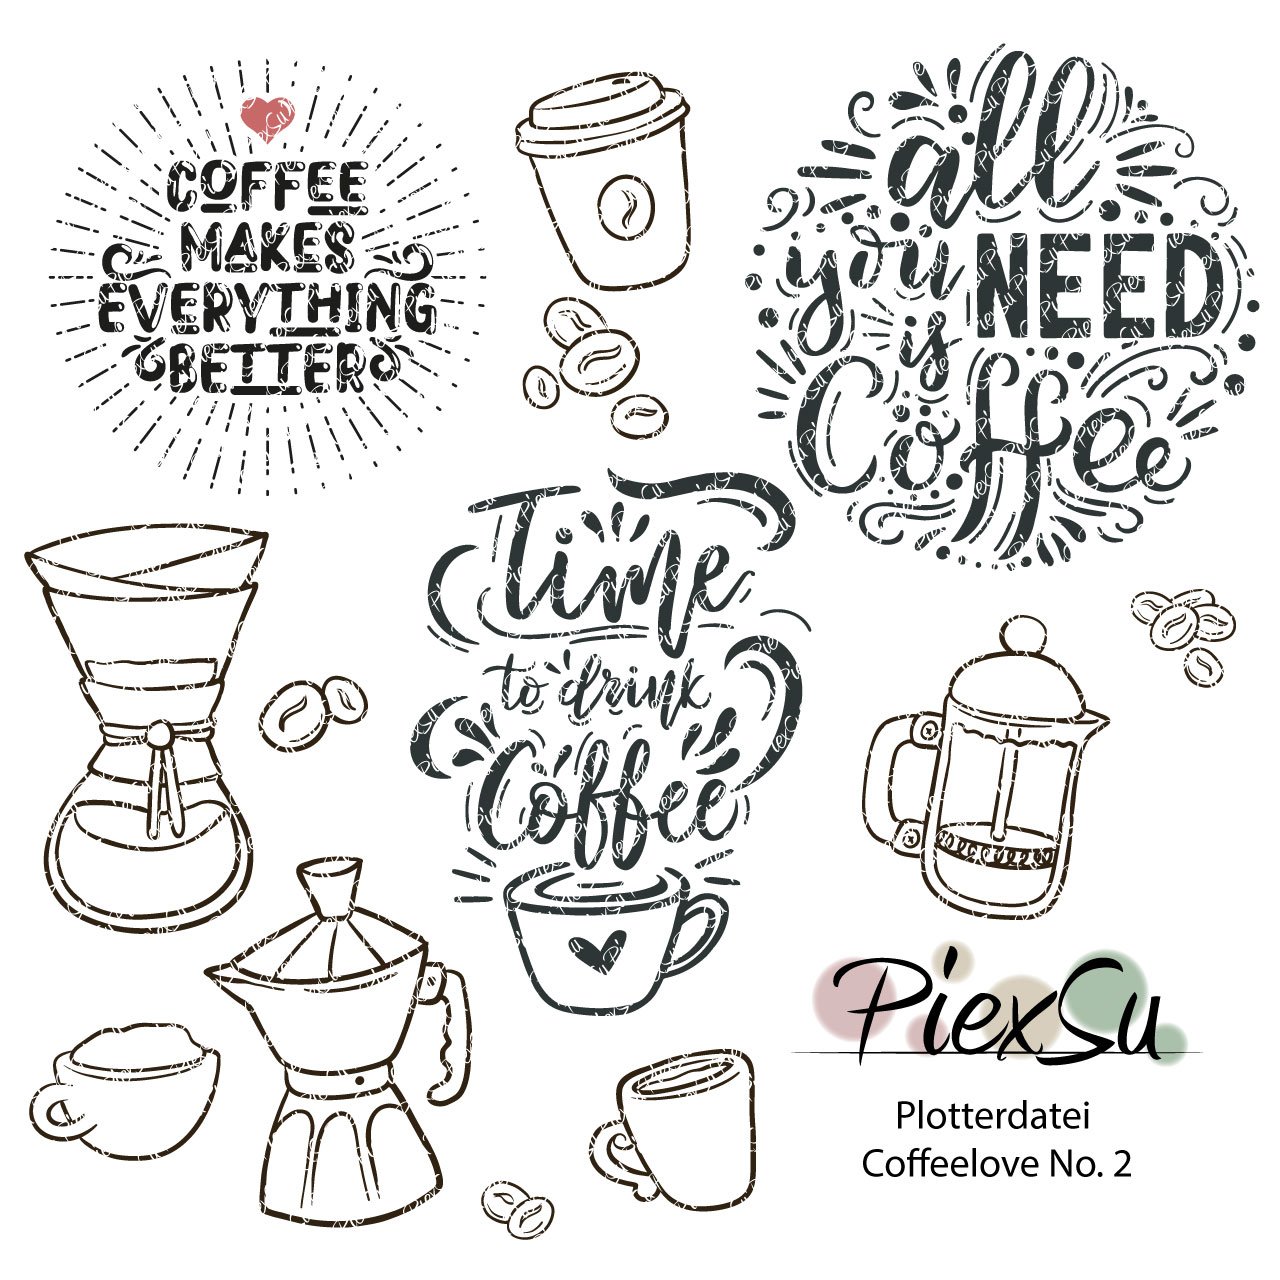 PiexSu-Plotterdatei-Set-Coffeelove-No.-2-Titelbild2